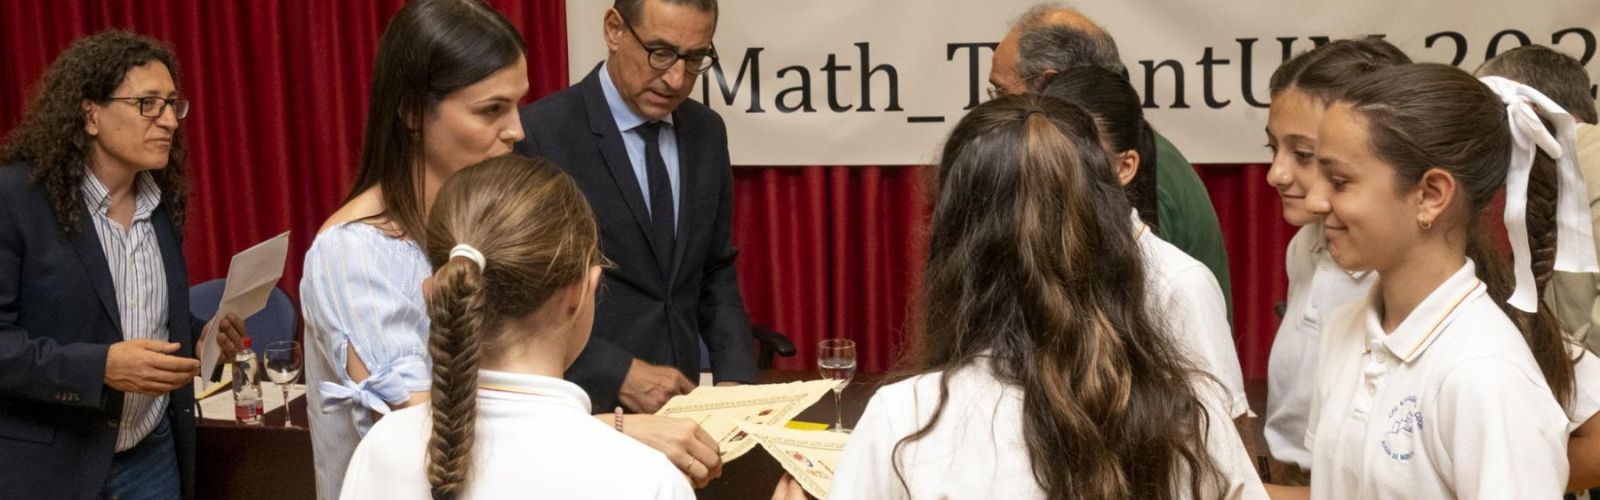 El concurso matemático Math_TalentUM resolverá las conjeturas en una fase final con mucho ingenio